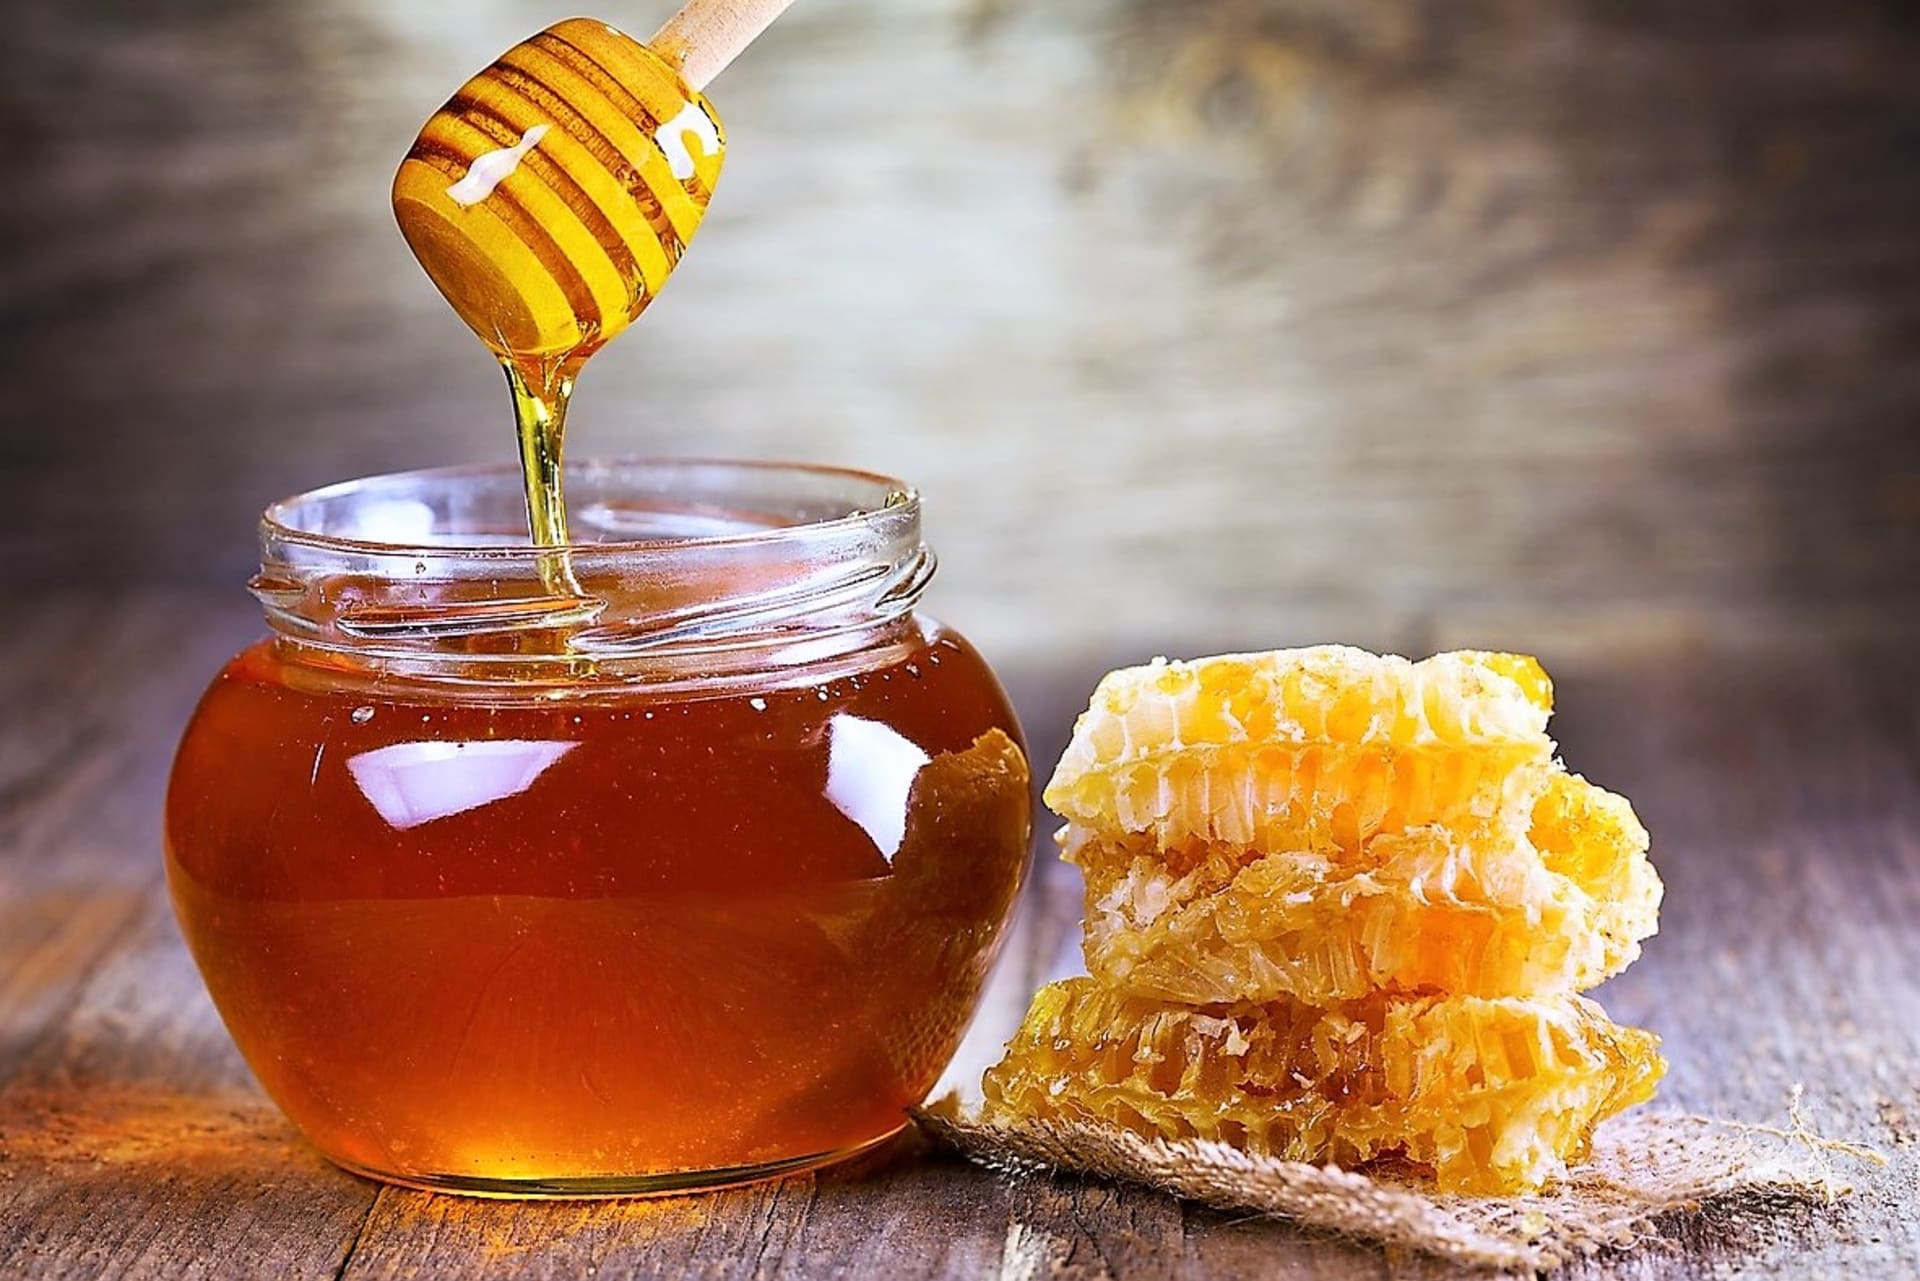 Med je dobrá prevence chorob z nachlazení, protože přirozeně posiluje imunitní systém, stejně tak pomáhá při chřipce, kašli, rýmě a snižuje horečku, jelikož vyvolává pocení a usnadňuje vykašlávání hlenů.